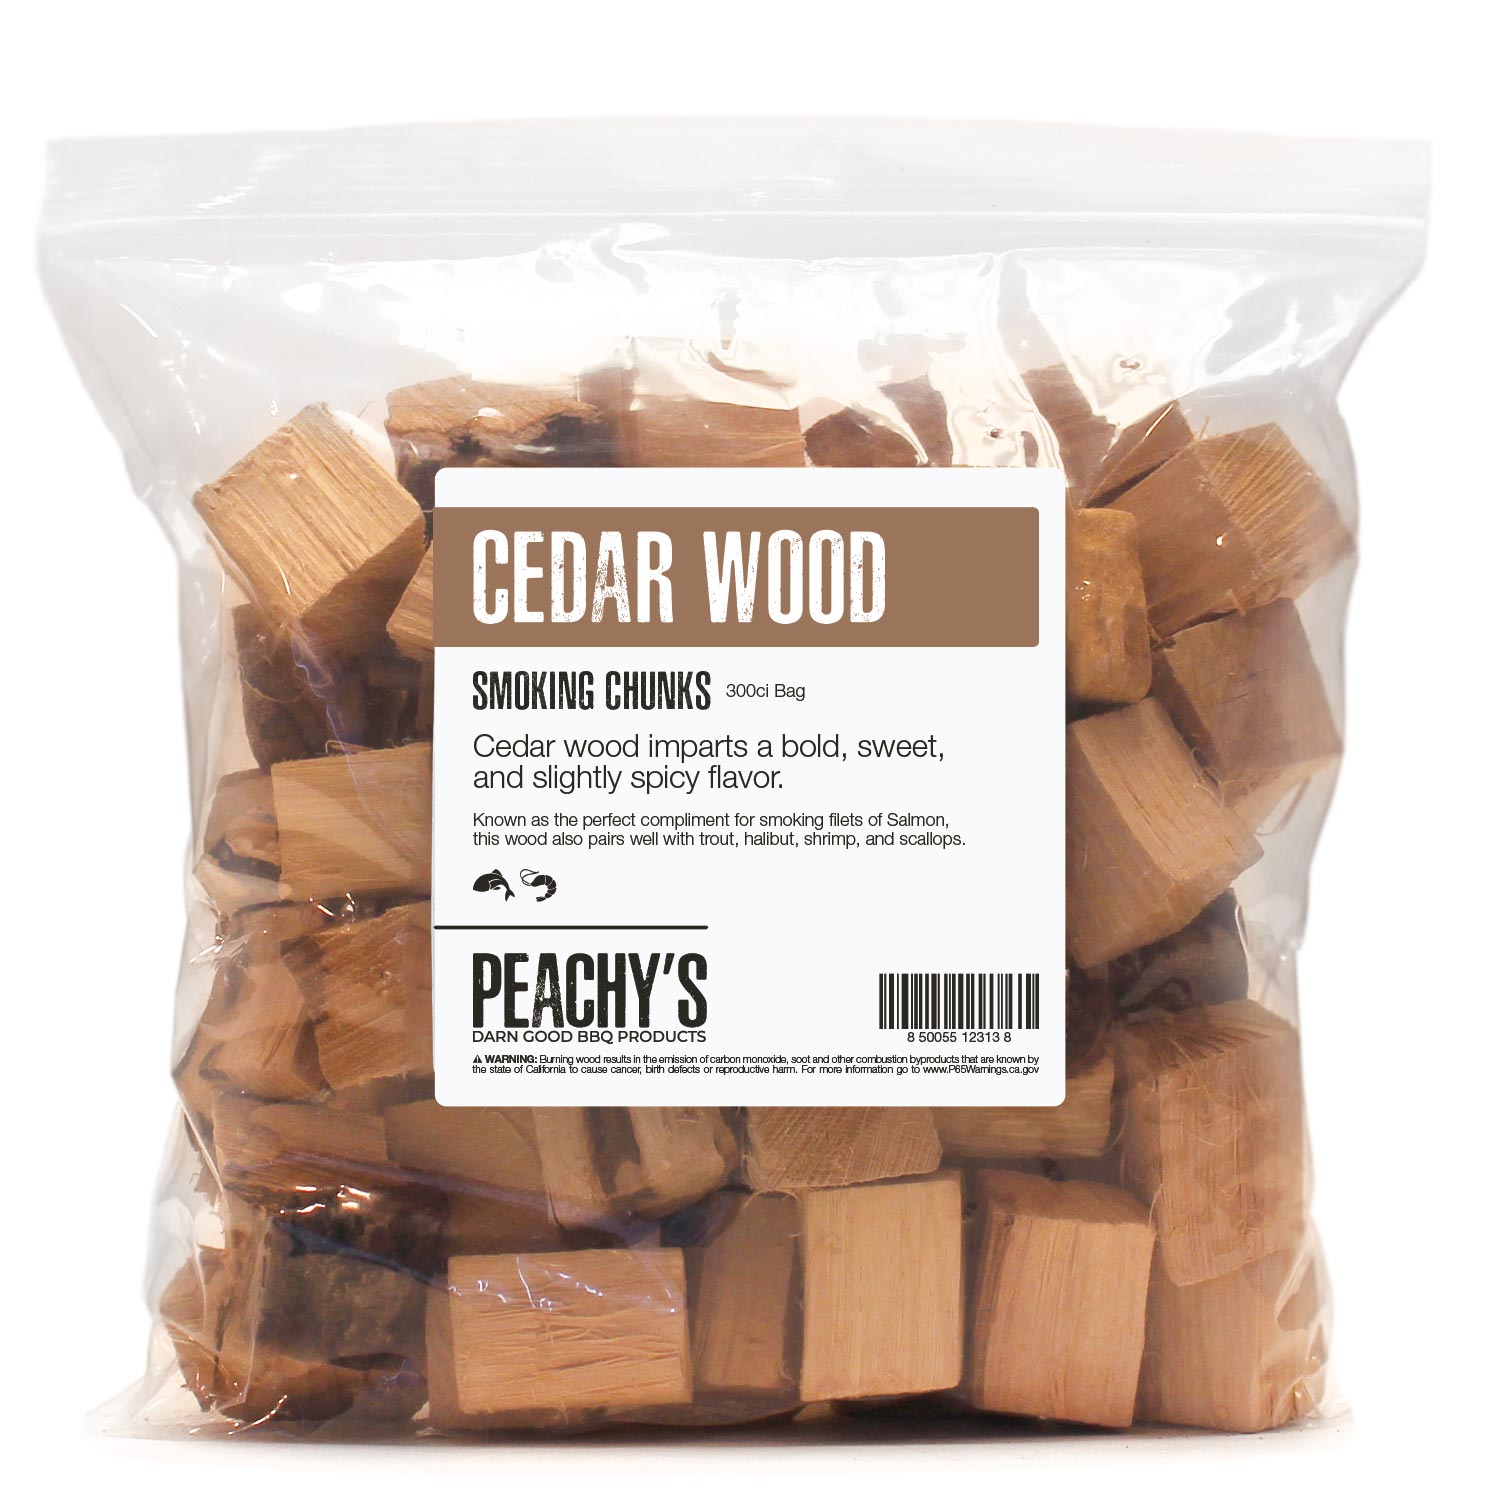 CEDAR Chunks | 300ci Bag of Premium Smoking Woods by PEACHY'S